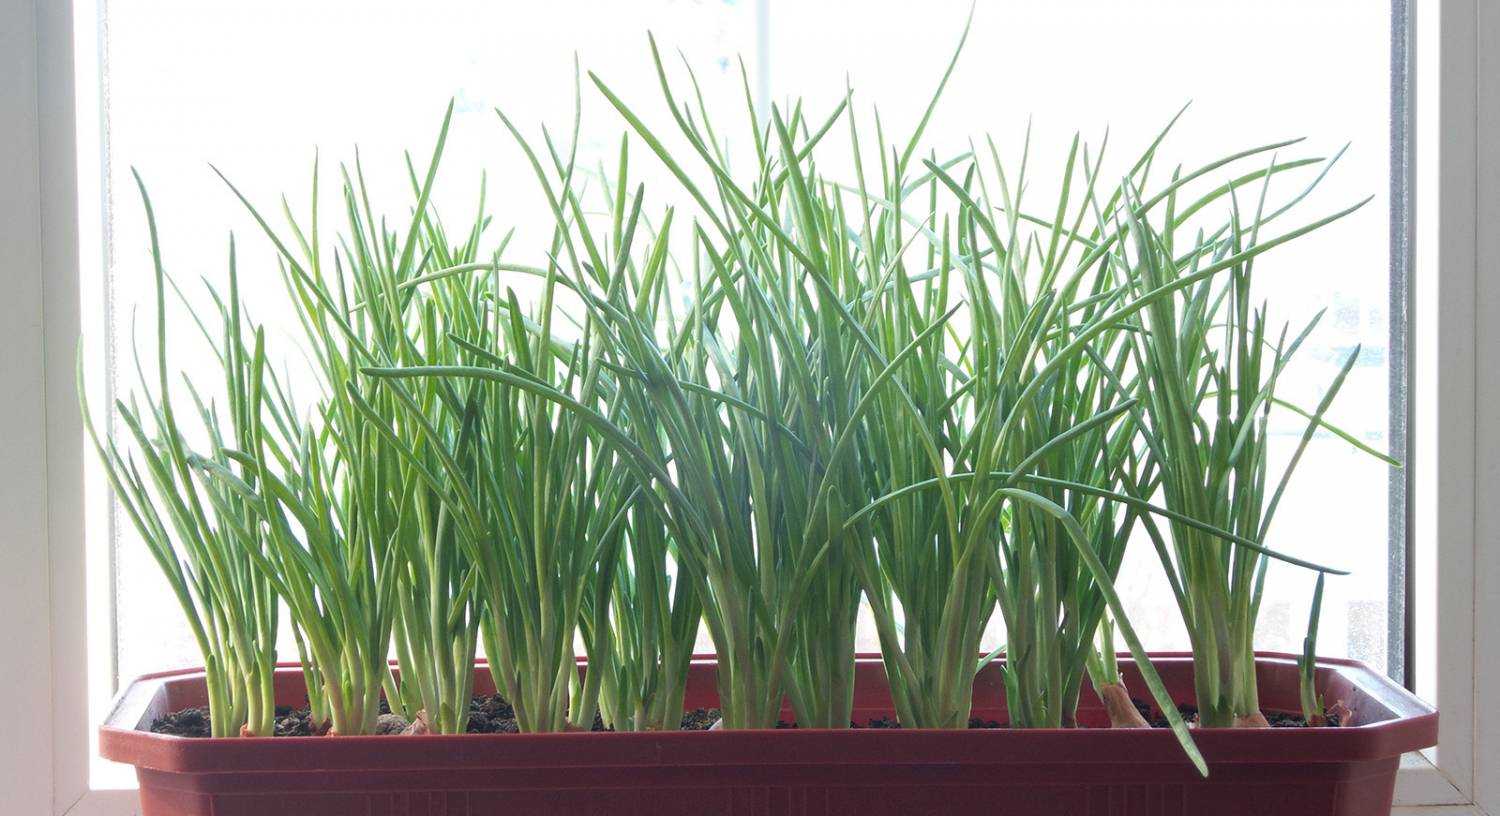 Зеленый лук на подоконнике: как посадить и вырастить дома в земле и без нее, можно ли создать условия в квартире зимой, какие сорта, кроме репчатого, подойдут?